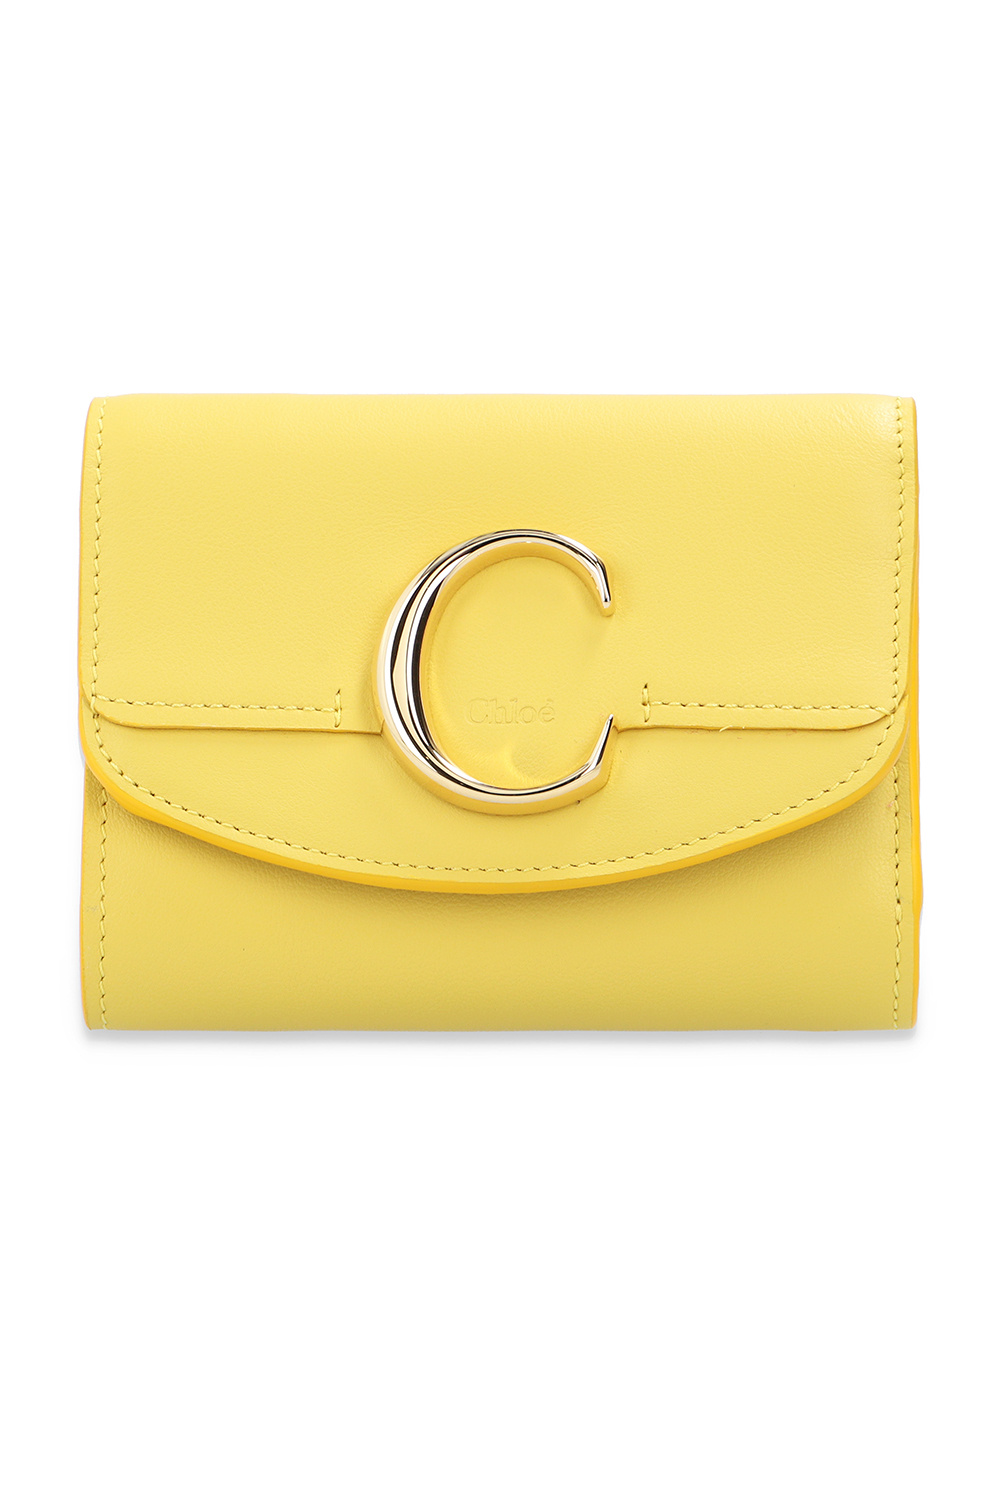 Chloé ‘Chloé C’ wallet